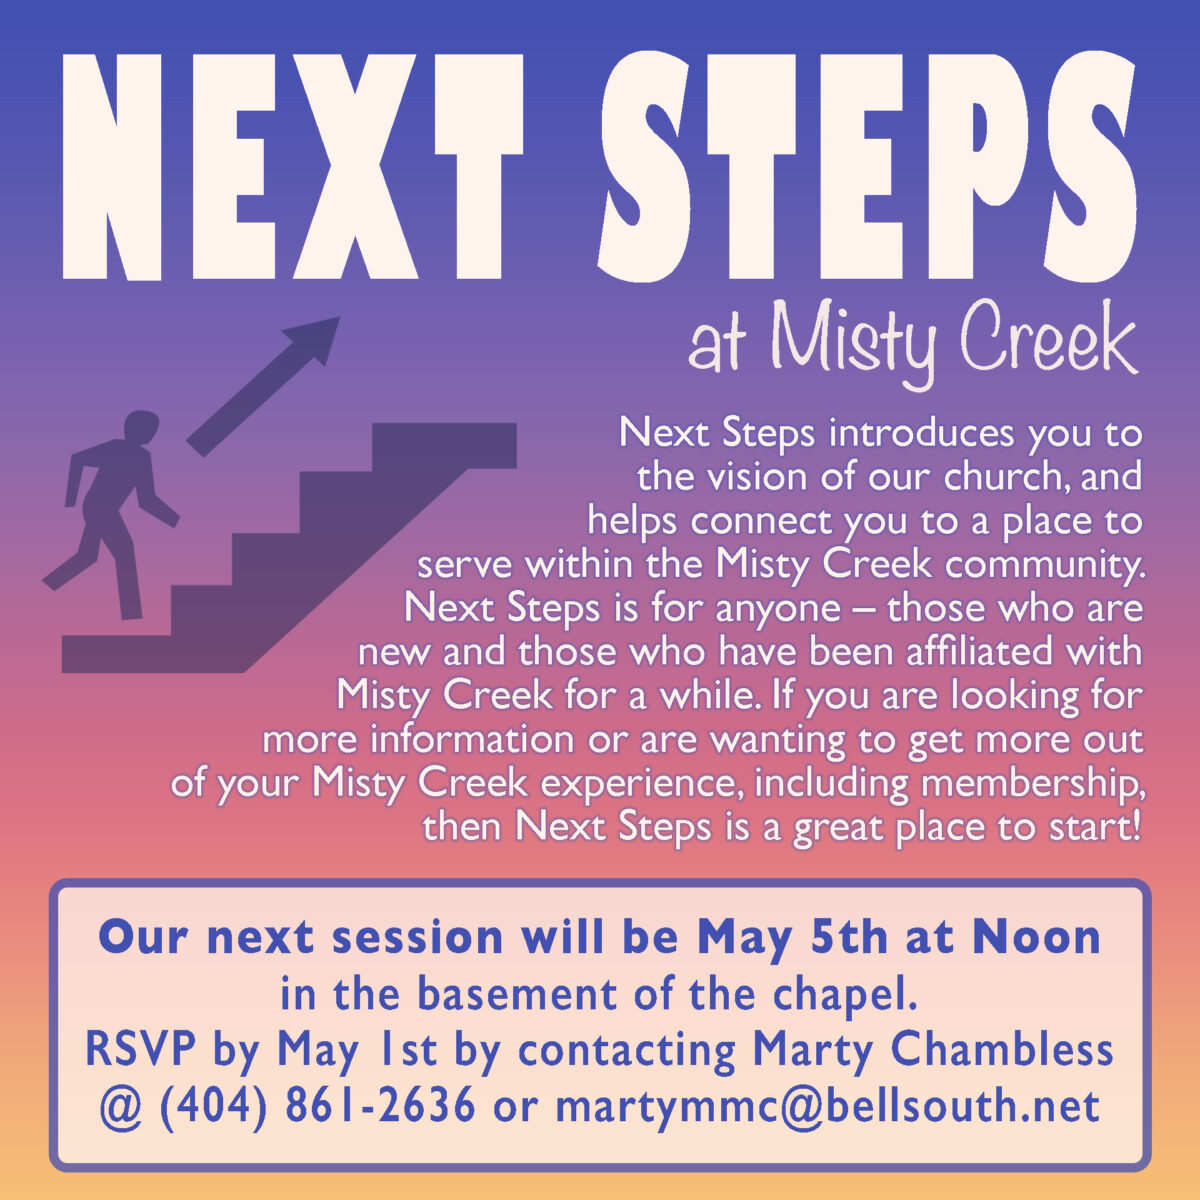 Next Steps! - Coming May 5th